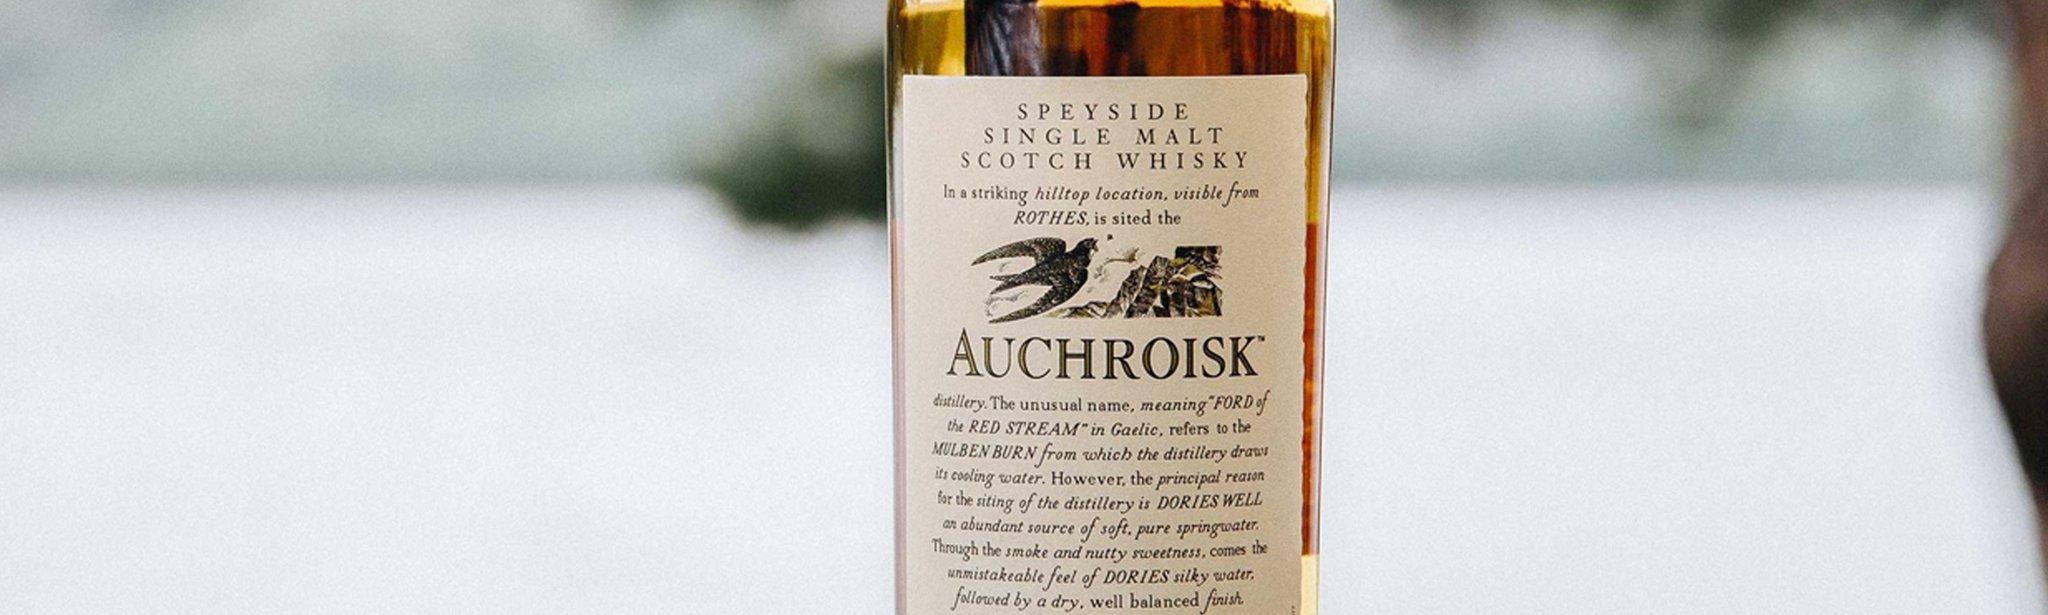 Auchroisk - The Bottle Club